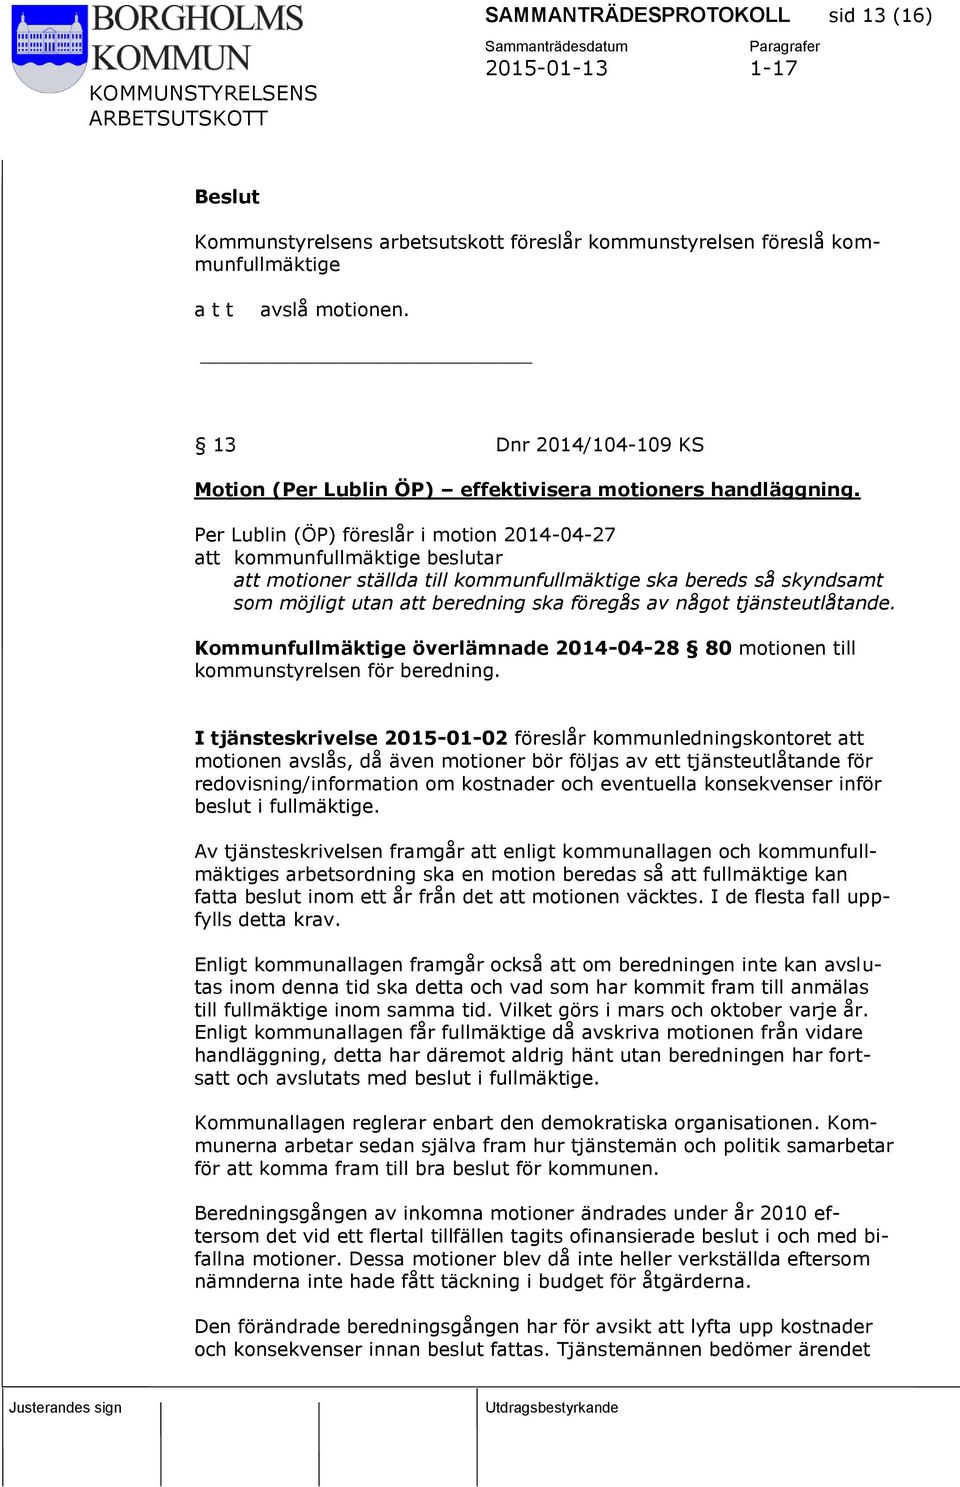 Per Lublin (ÖP) föreslår i motion 2014-04-27 att kommunfullmäktige beslutar att motioner ställda till kommunfullmäktige ska bereds så skyndsamt som möjligt utan att beredning ska föregås av något